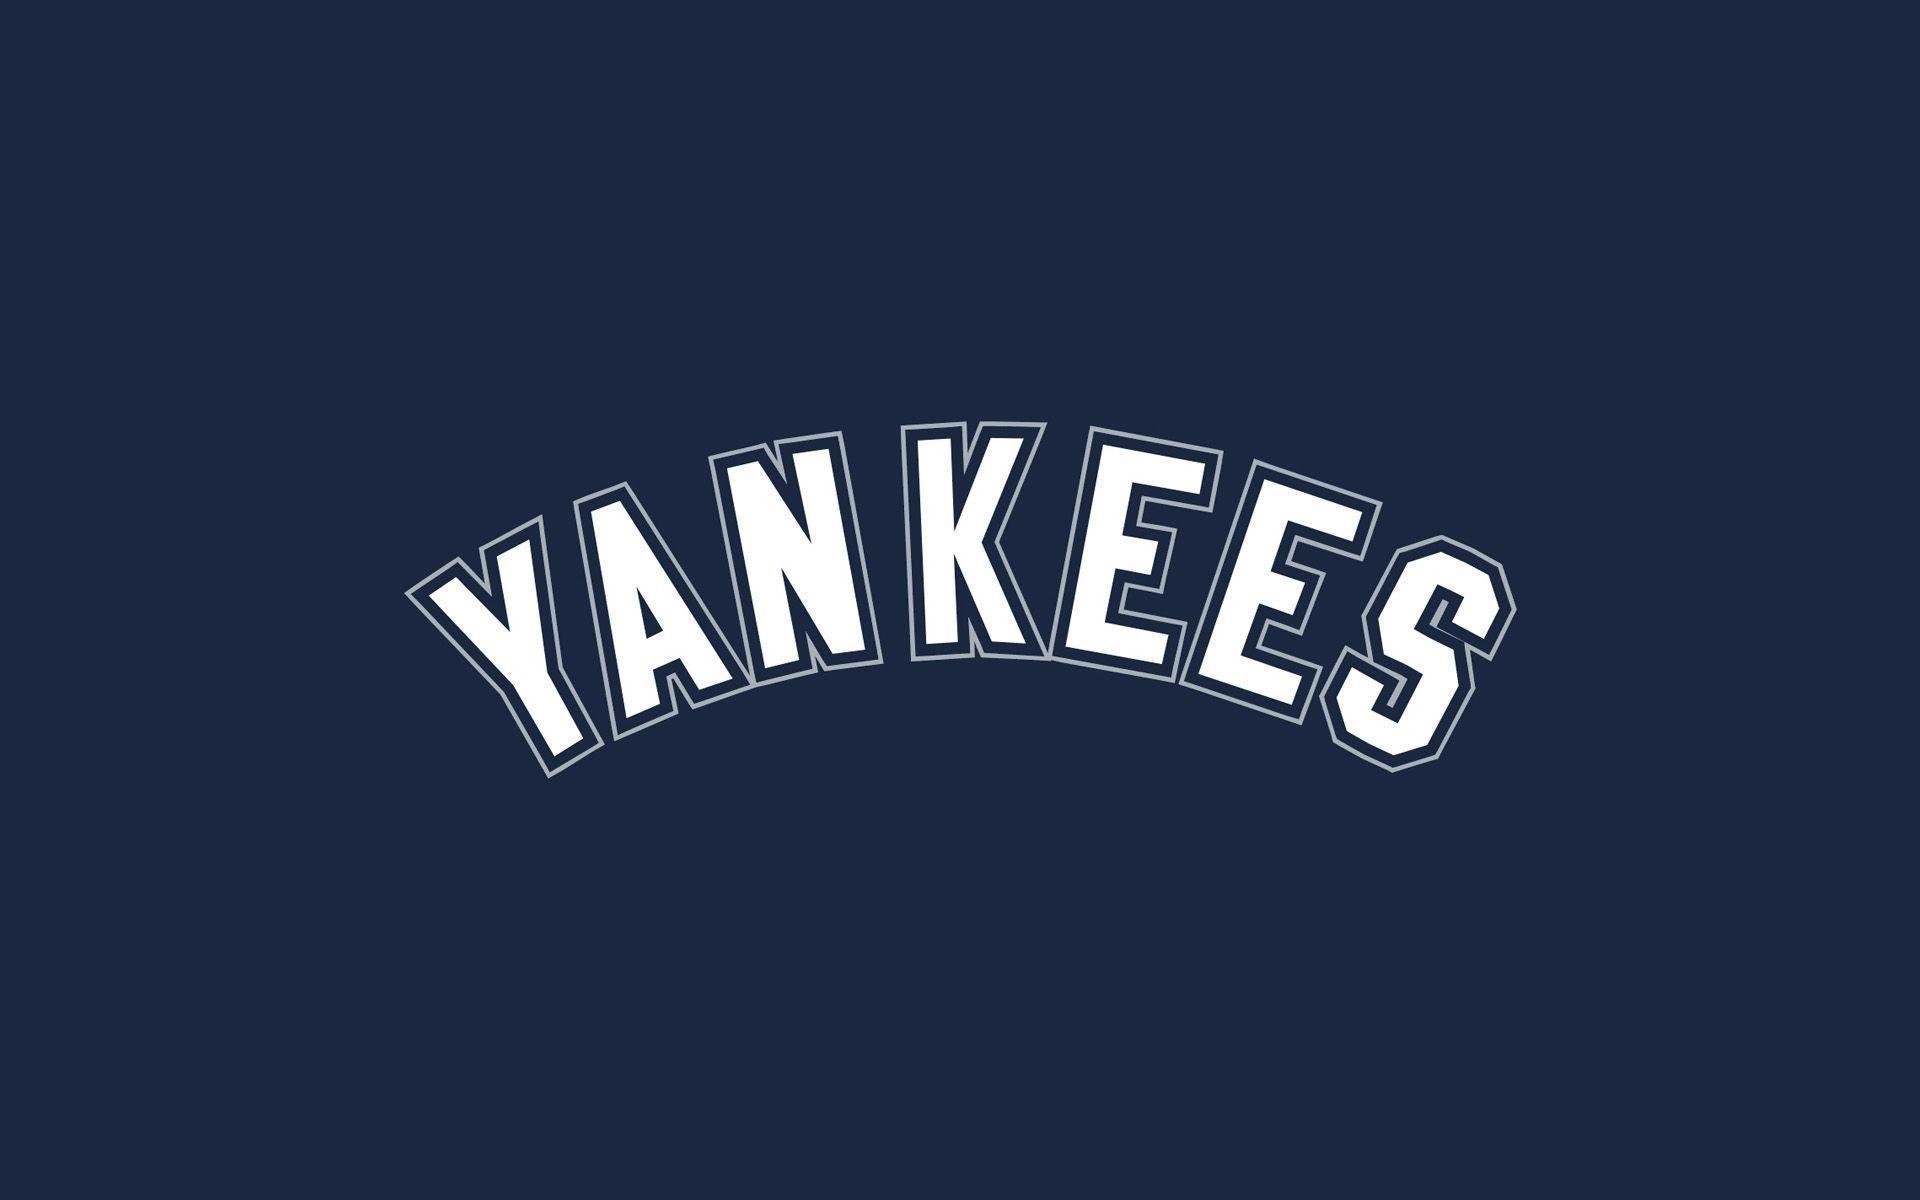 More New York Yankees wallpapers